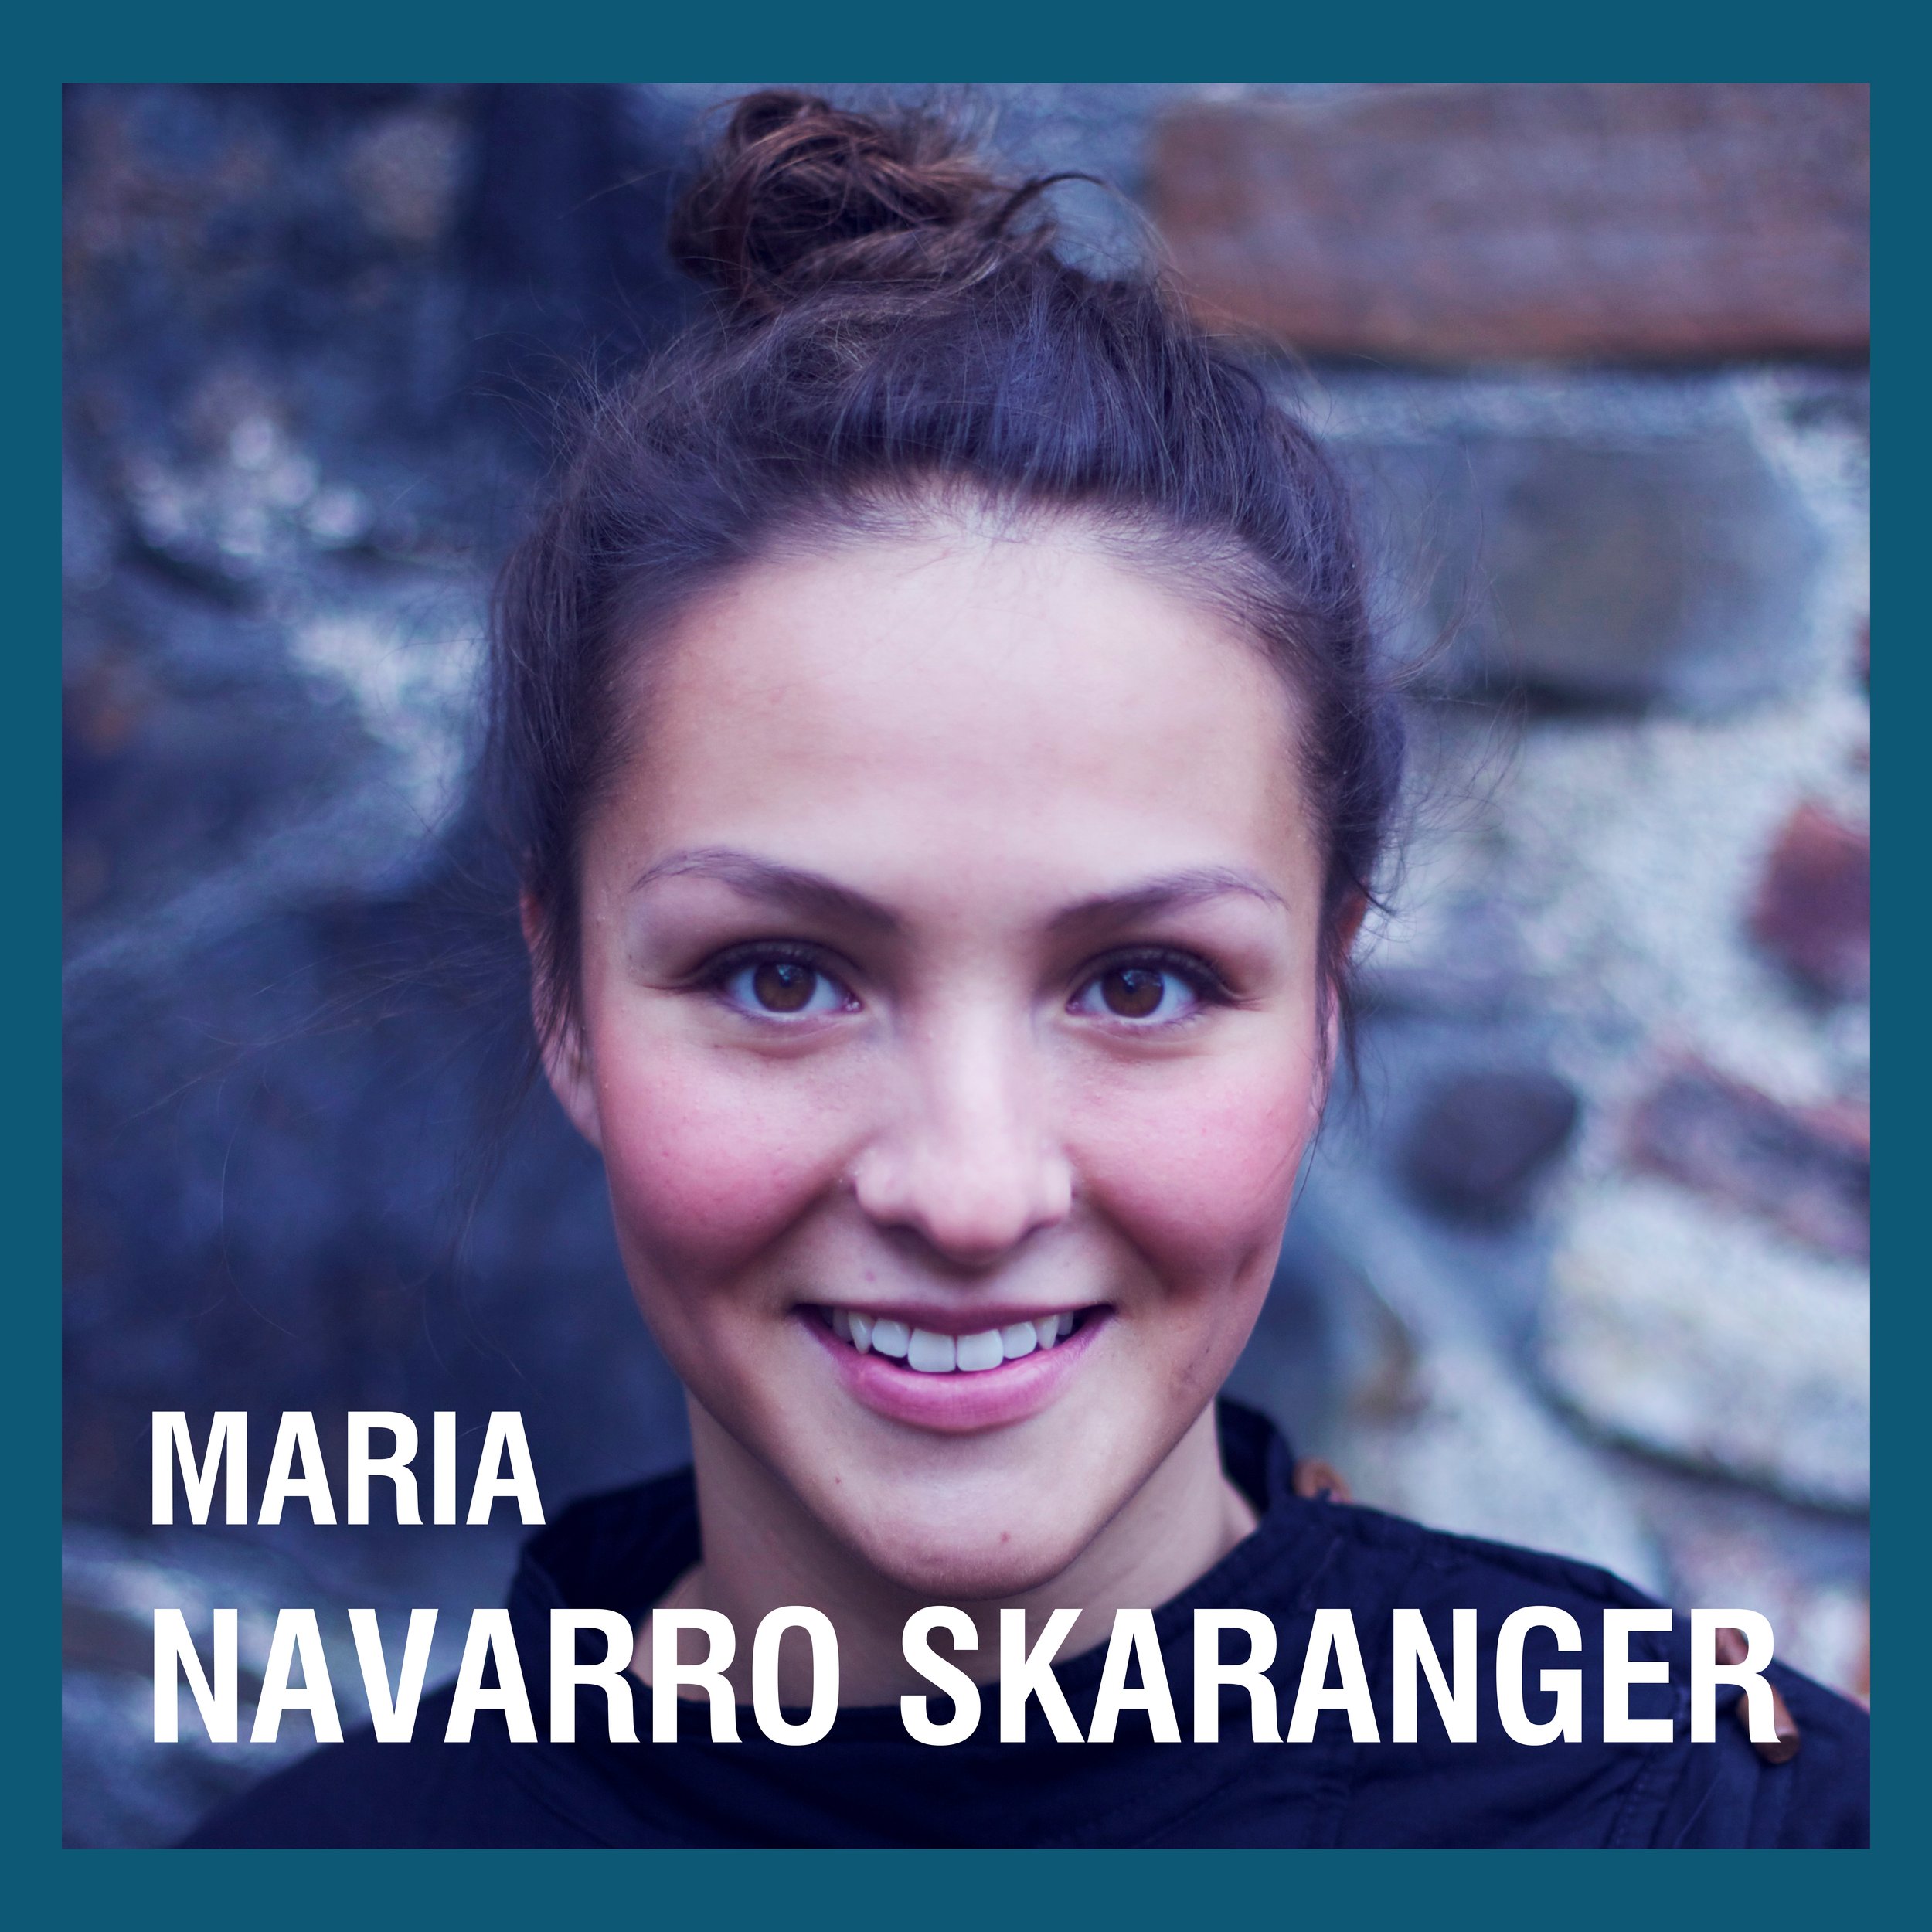 Komprimert Maria Navarro Skaranger uten logo SoMe kampanje.jpg